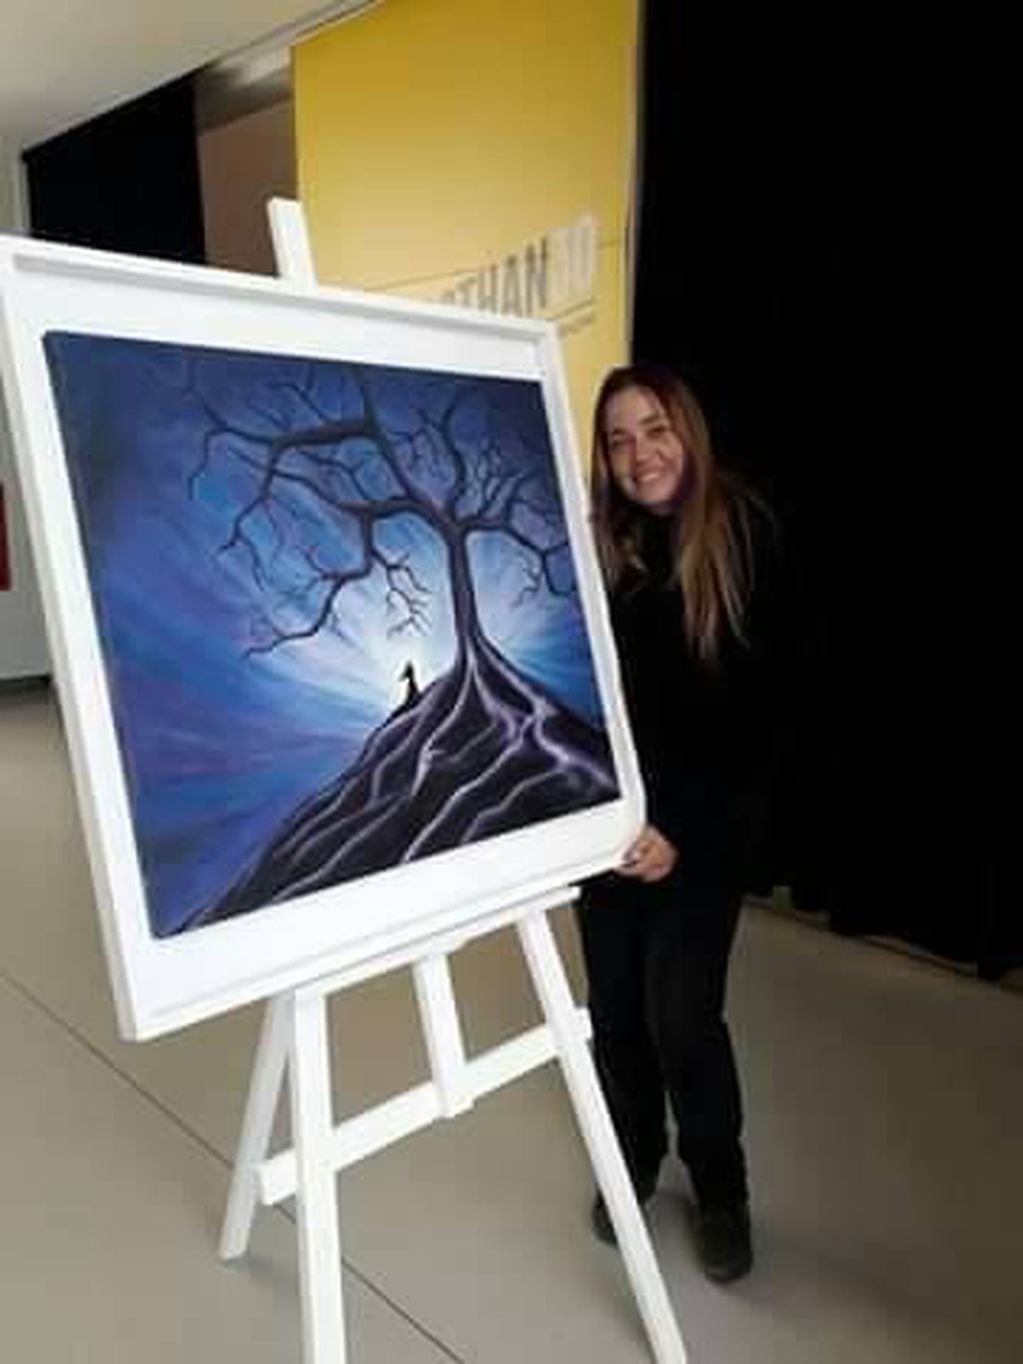 Ivana Zubillaga, Pintura al óleo "Hija de la noche" expuesta en el marco de la muestra 100 artistas marplatenses en el Museo MAR . Mar del Plata